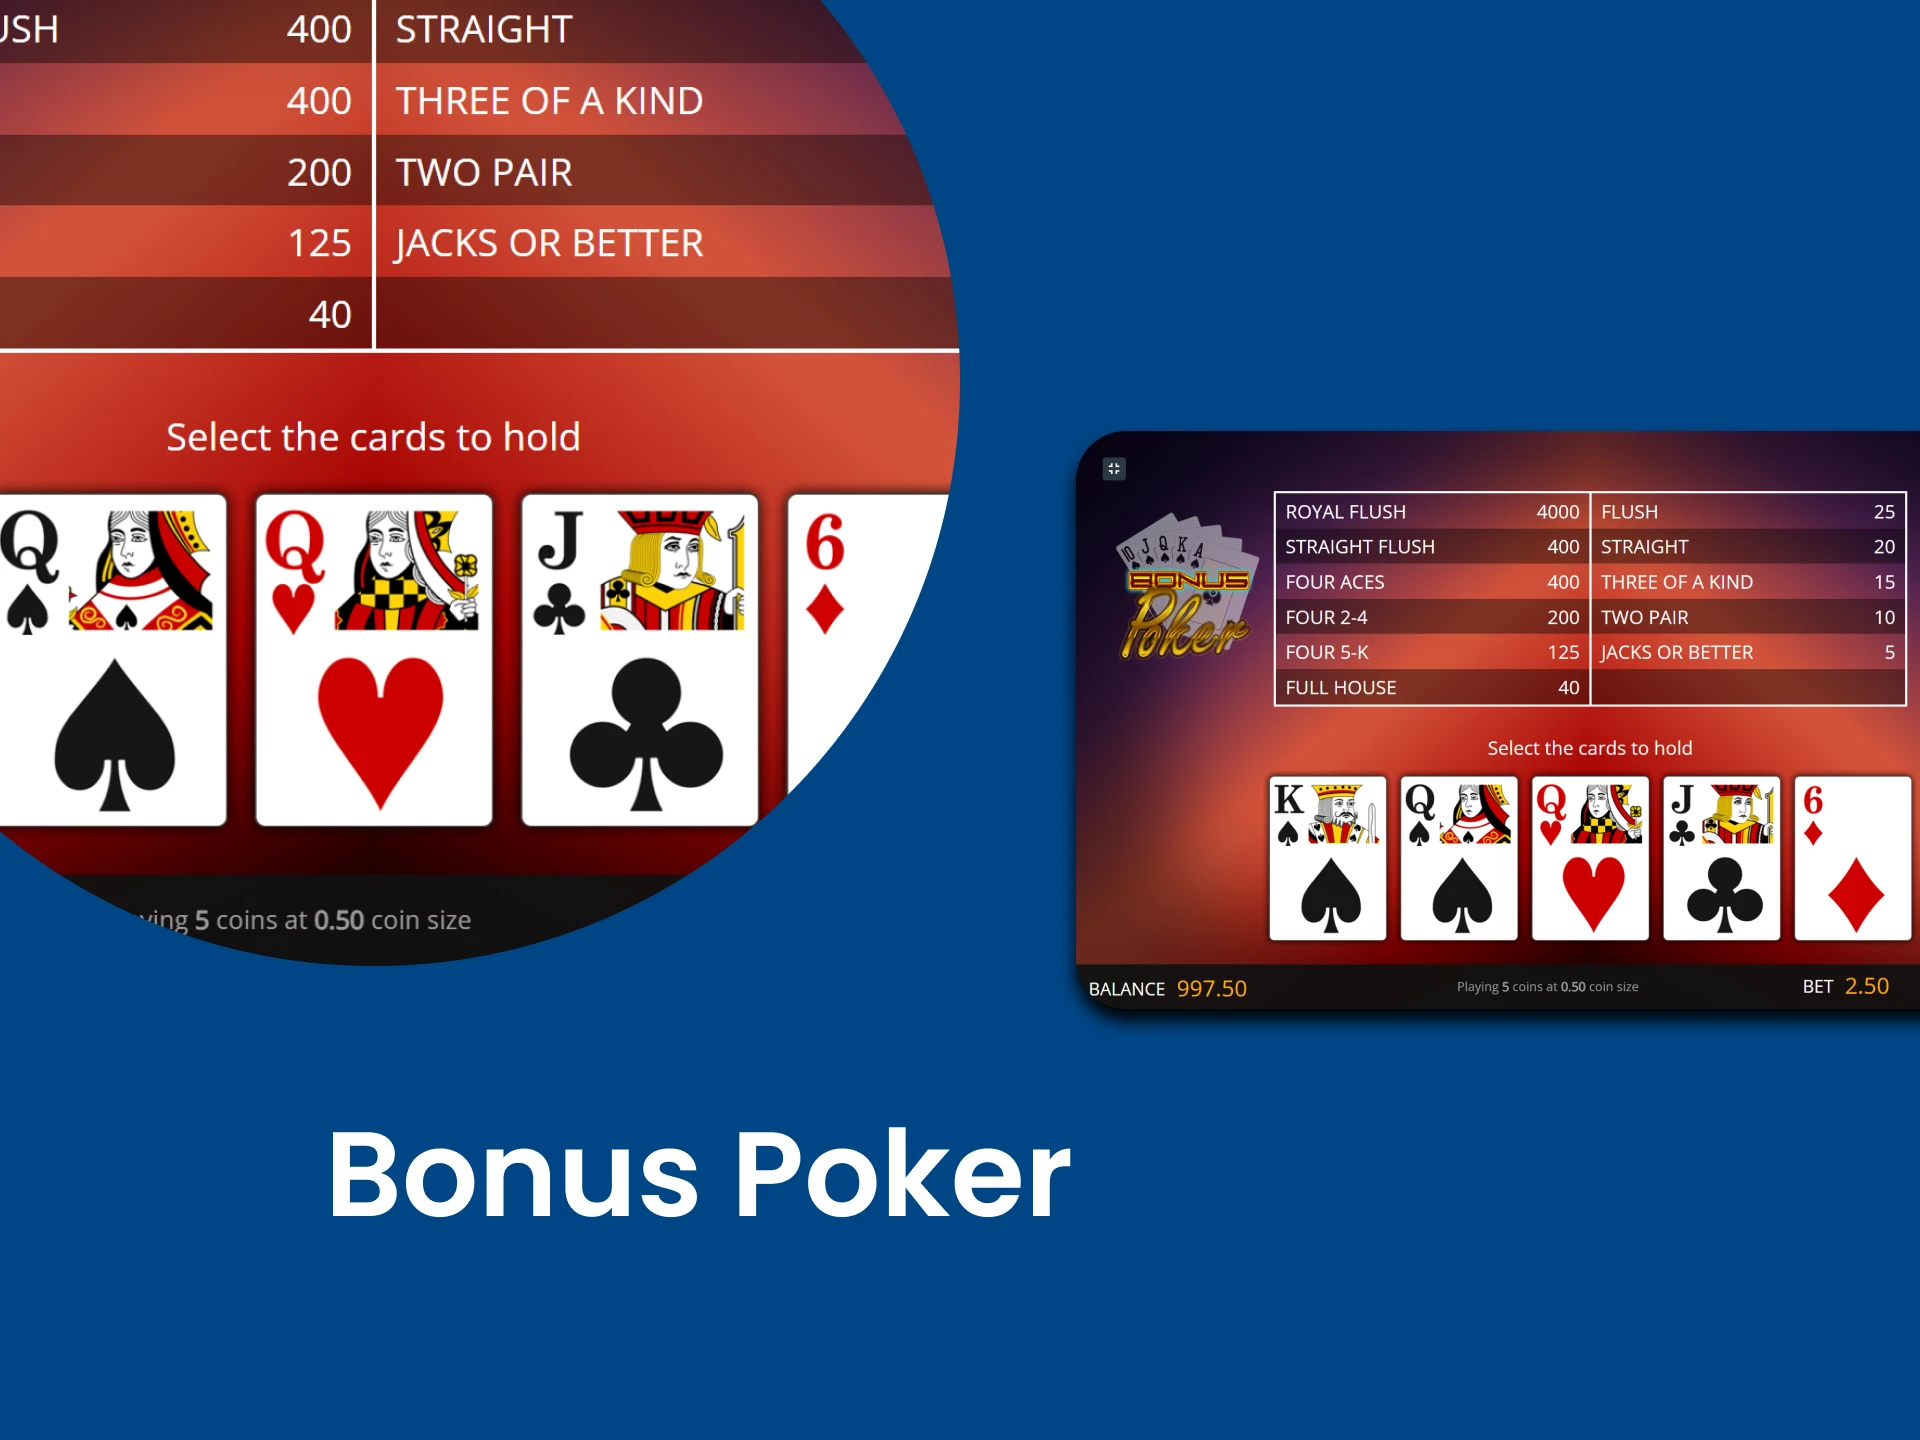 Select one of the Video Poker games Bonus Poker.